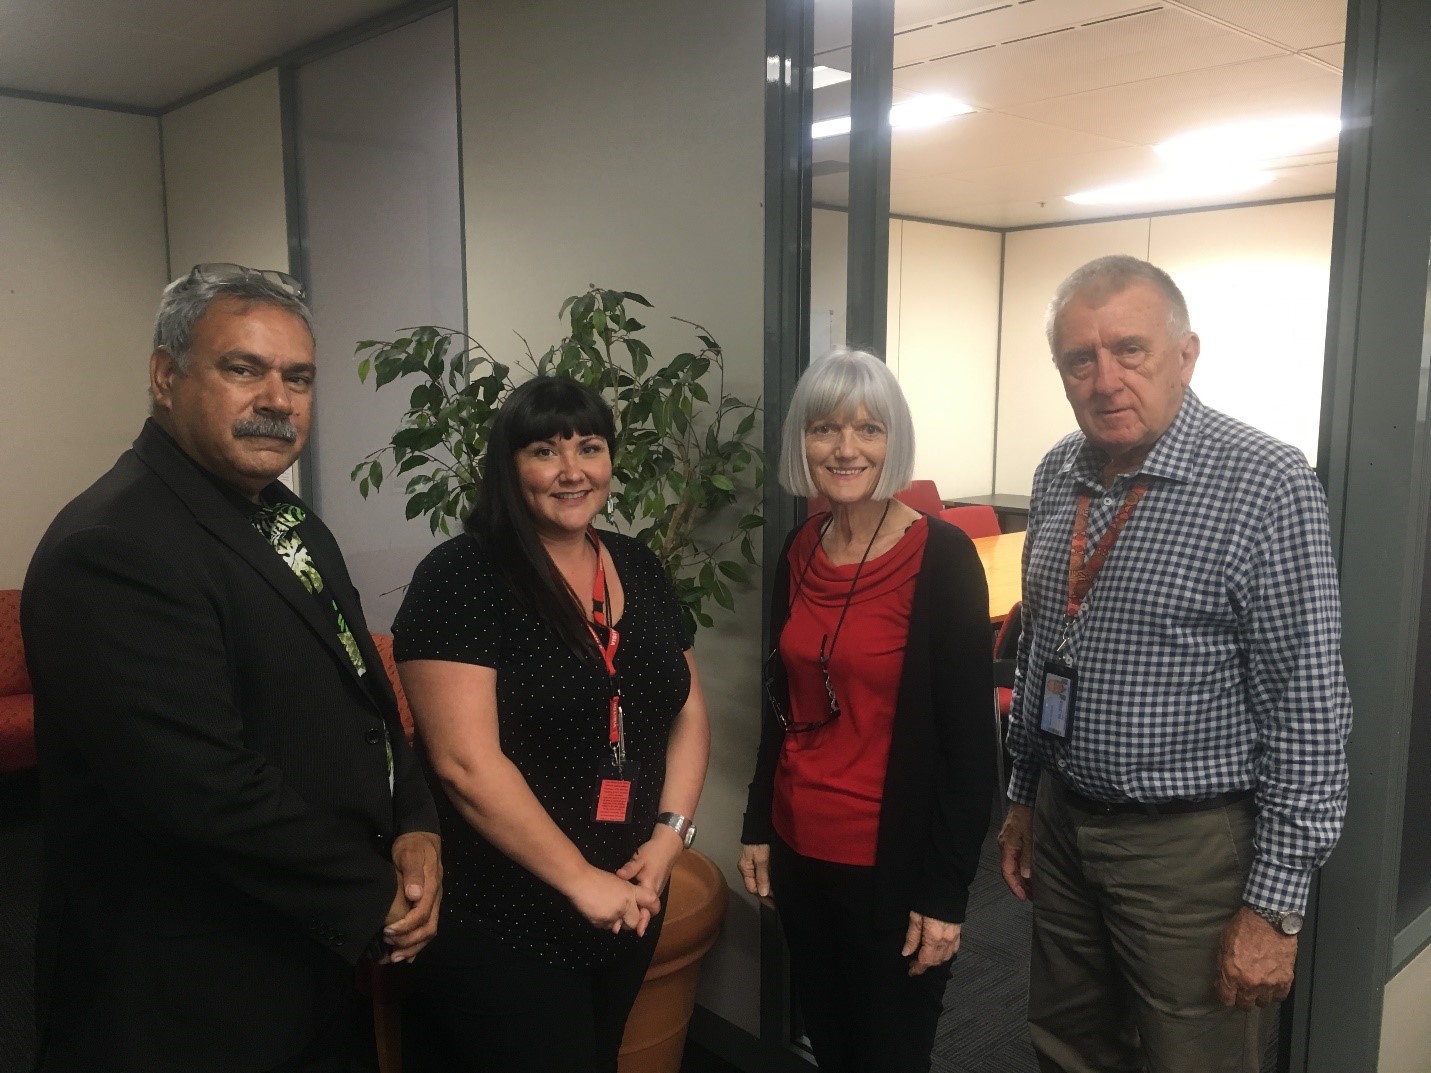 Jessica Perritt (deuxième de la gauche), conseillère principale sur le savoir autochtone à la SGDN, en compagnie de membres de Reconciliation Queensland : l’oncle Bill Buchanan (au bout à gauche), membre du comité de gestion; Linda Diane Harnett, secrétaire (deuxième de la droite); et Peter Jackson (au bout à droite), coprésident.